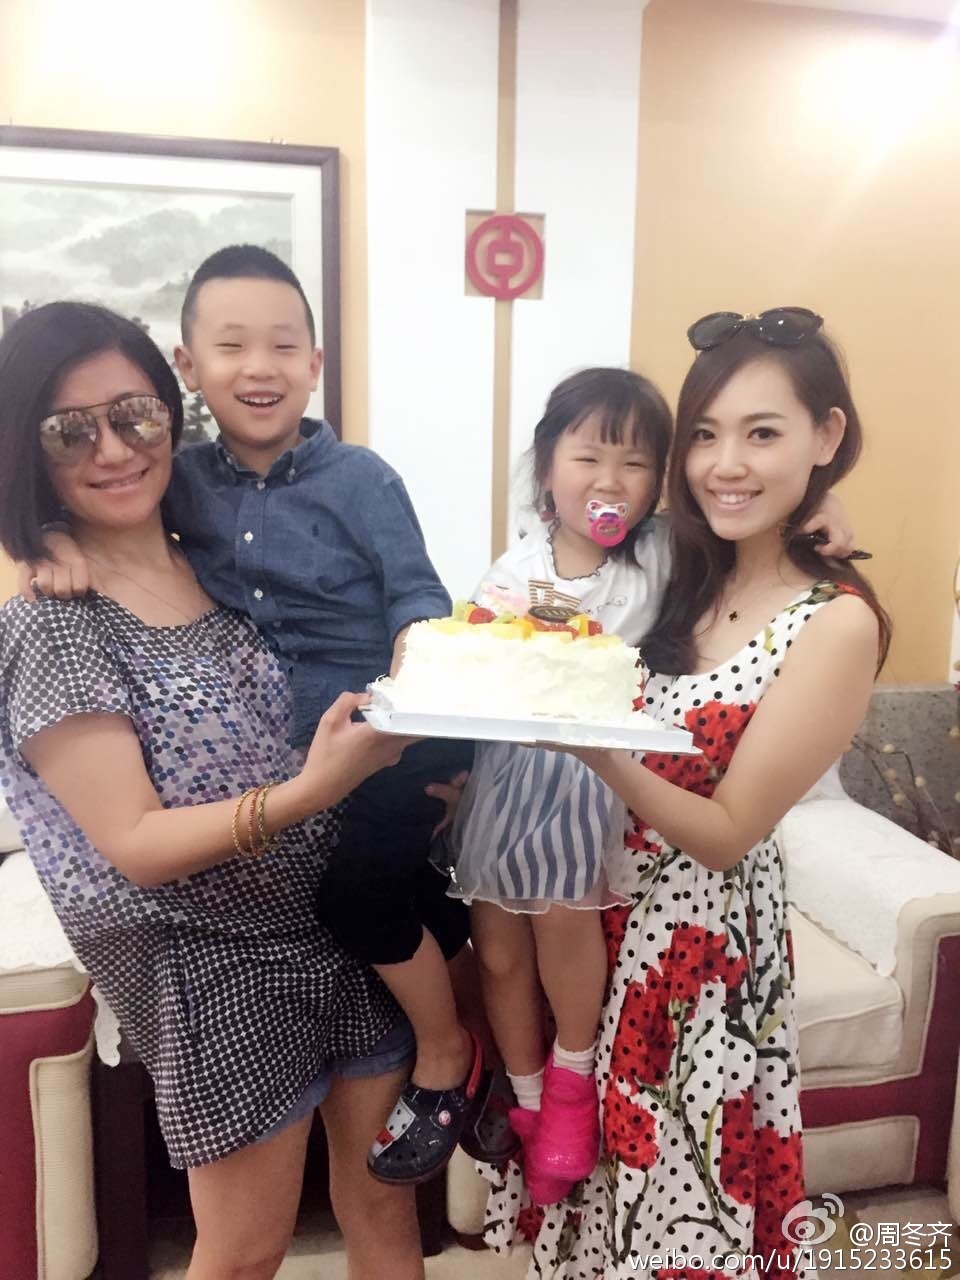 林永健儿子五岁生日 王宝强女儿现身为其捧蛋糕